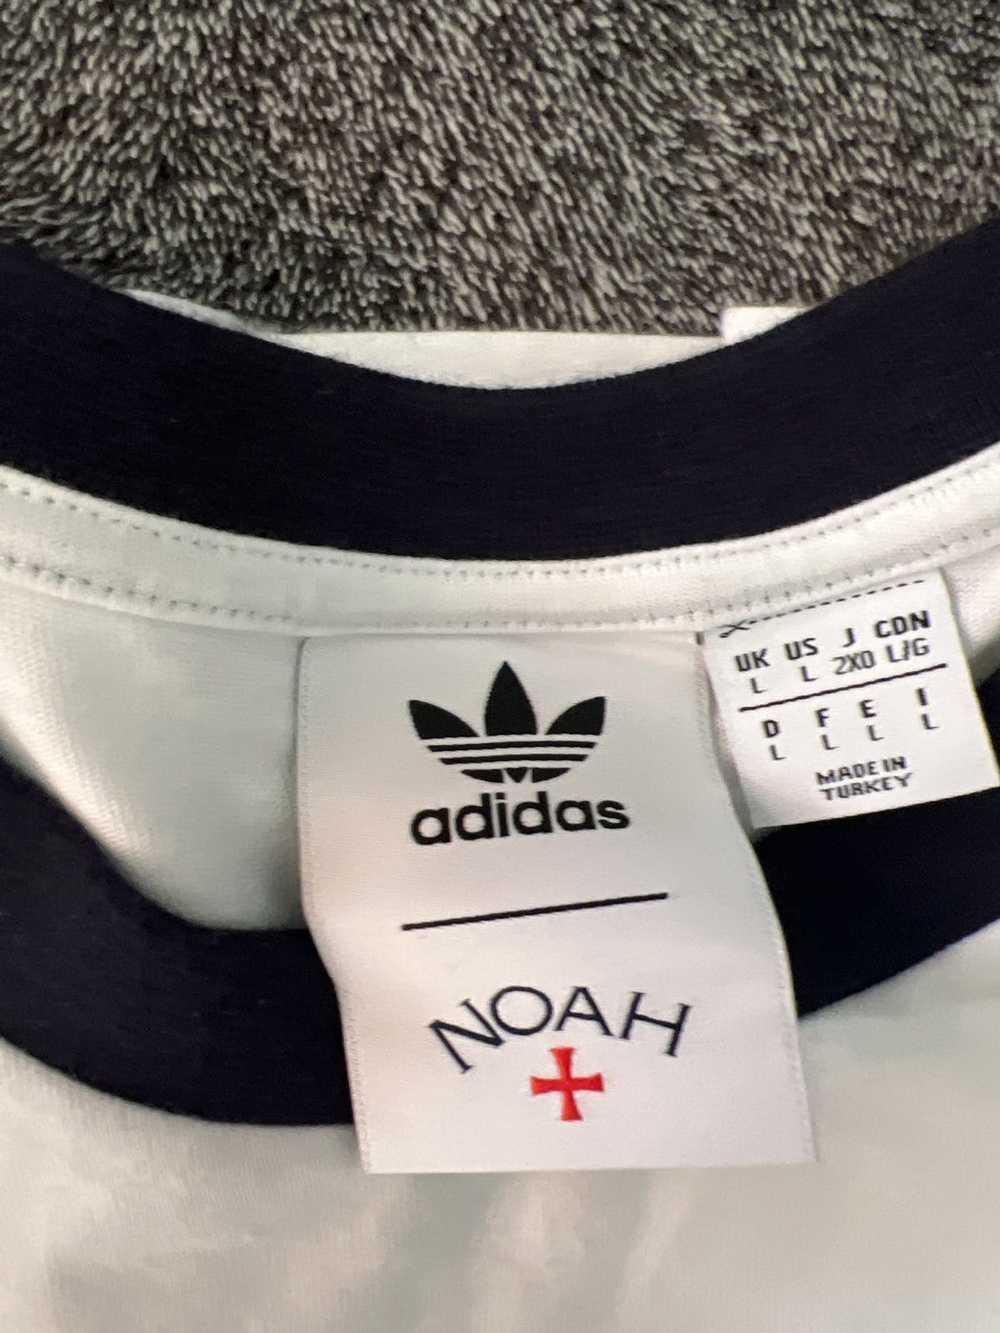 Adidas × Noah Noah x adidas t shirt - image 2